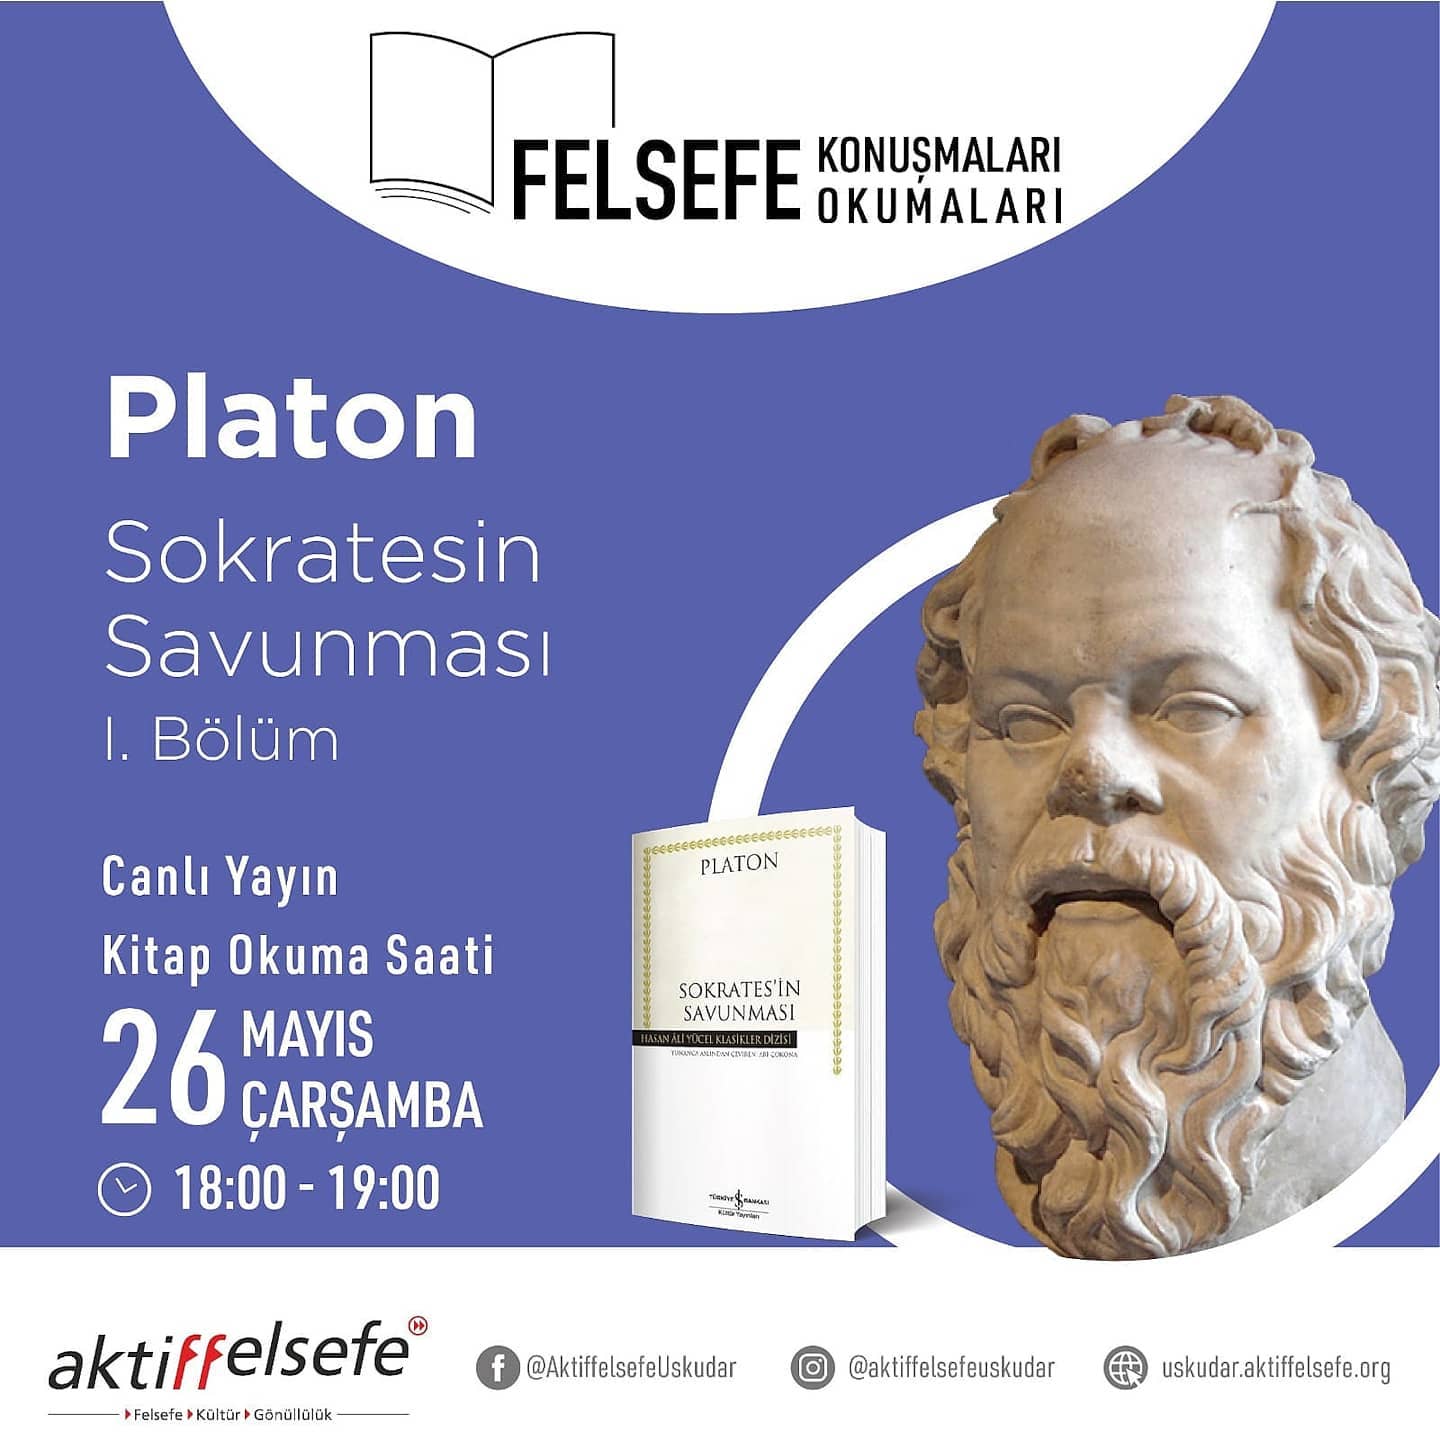 Webinar: Platon Sokratesin Savunması - Kitap Okuma Saati - Bölüm 1